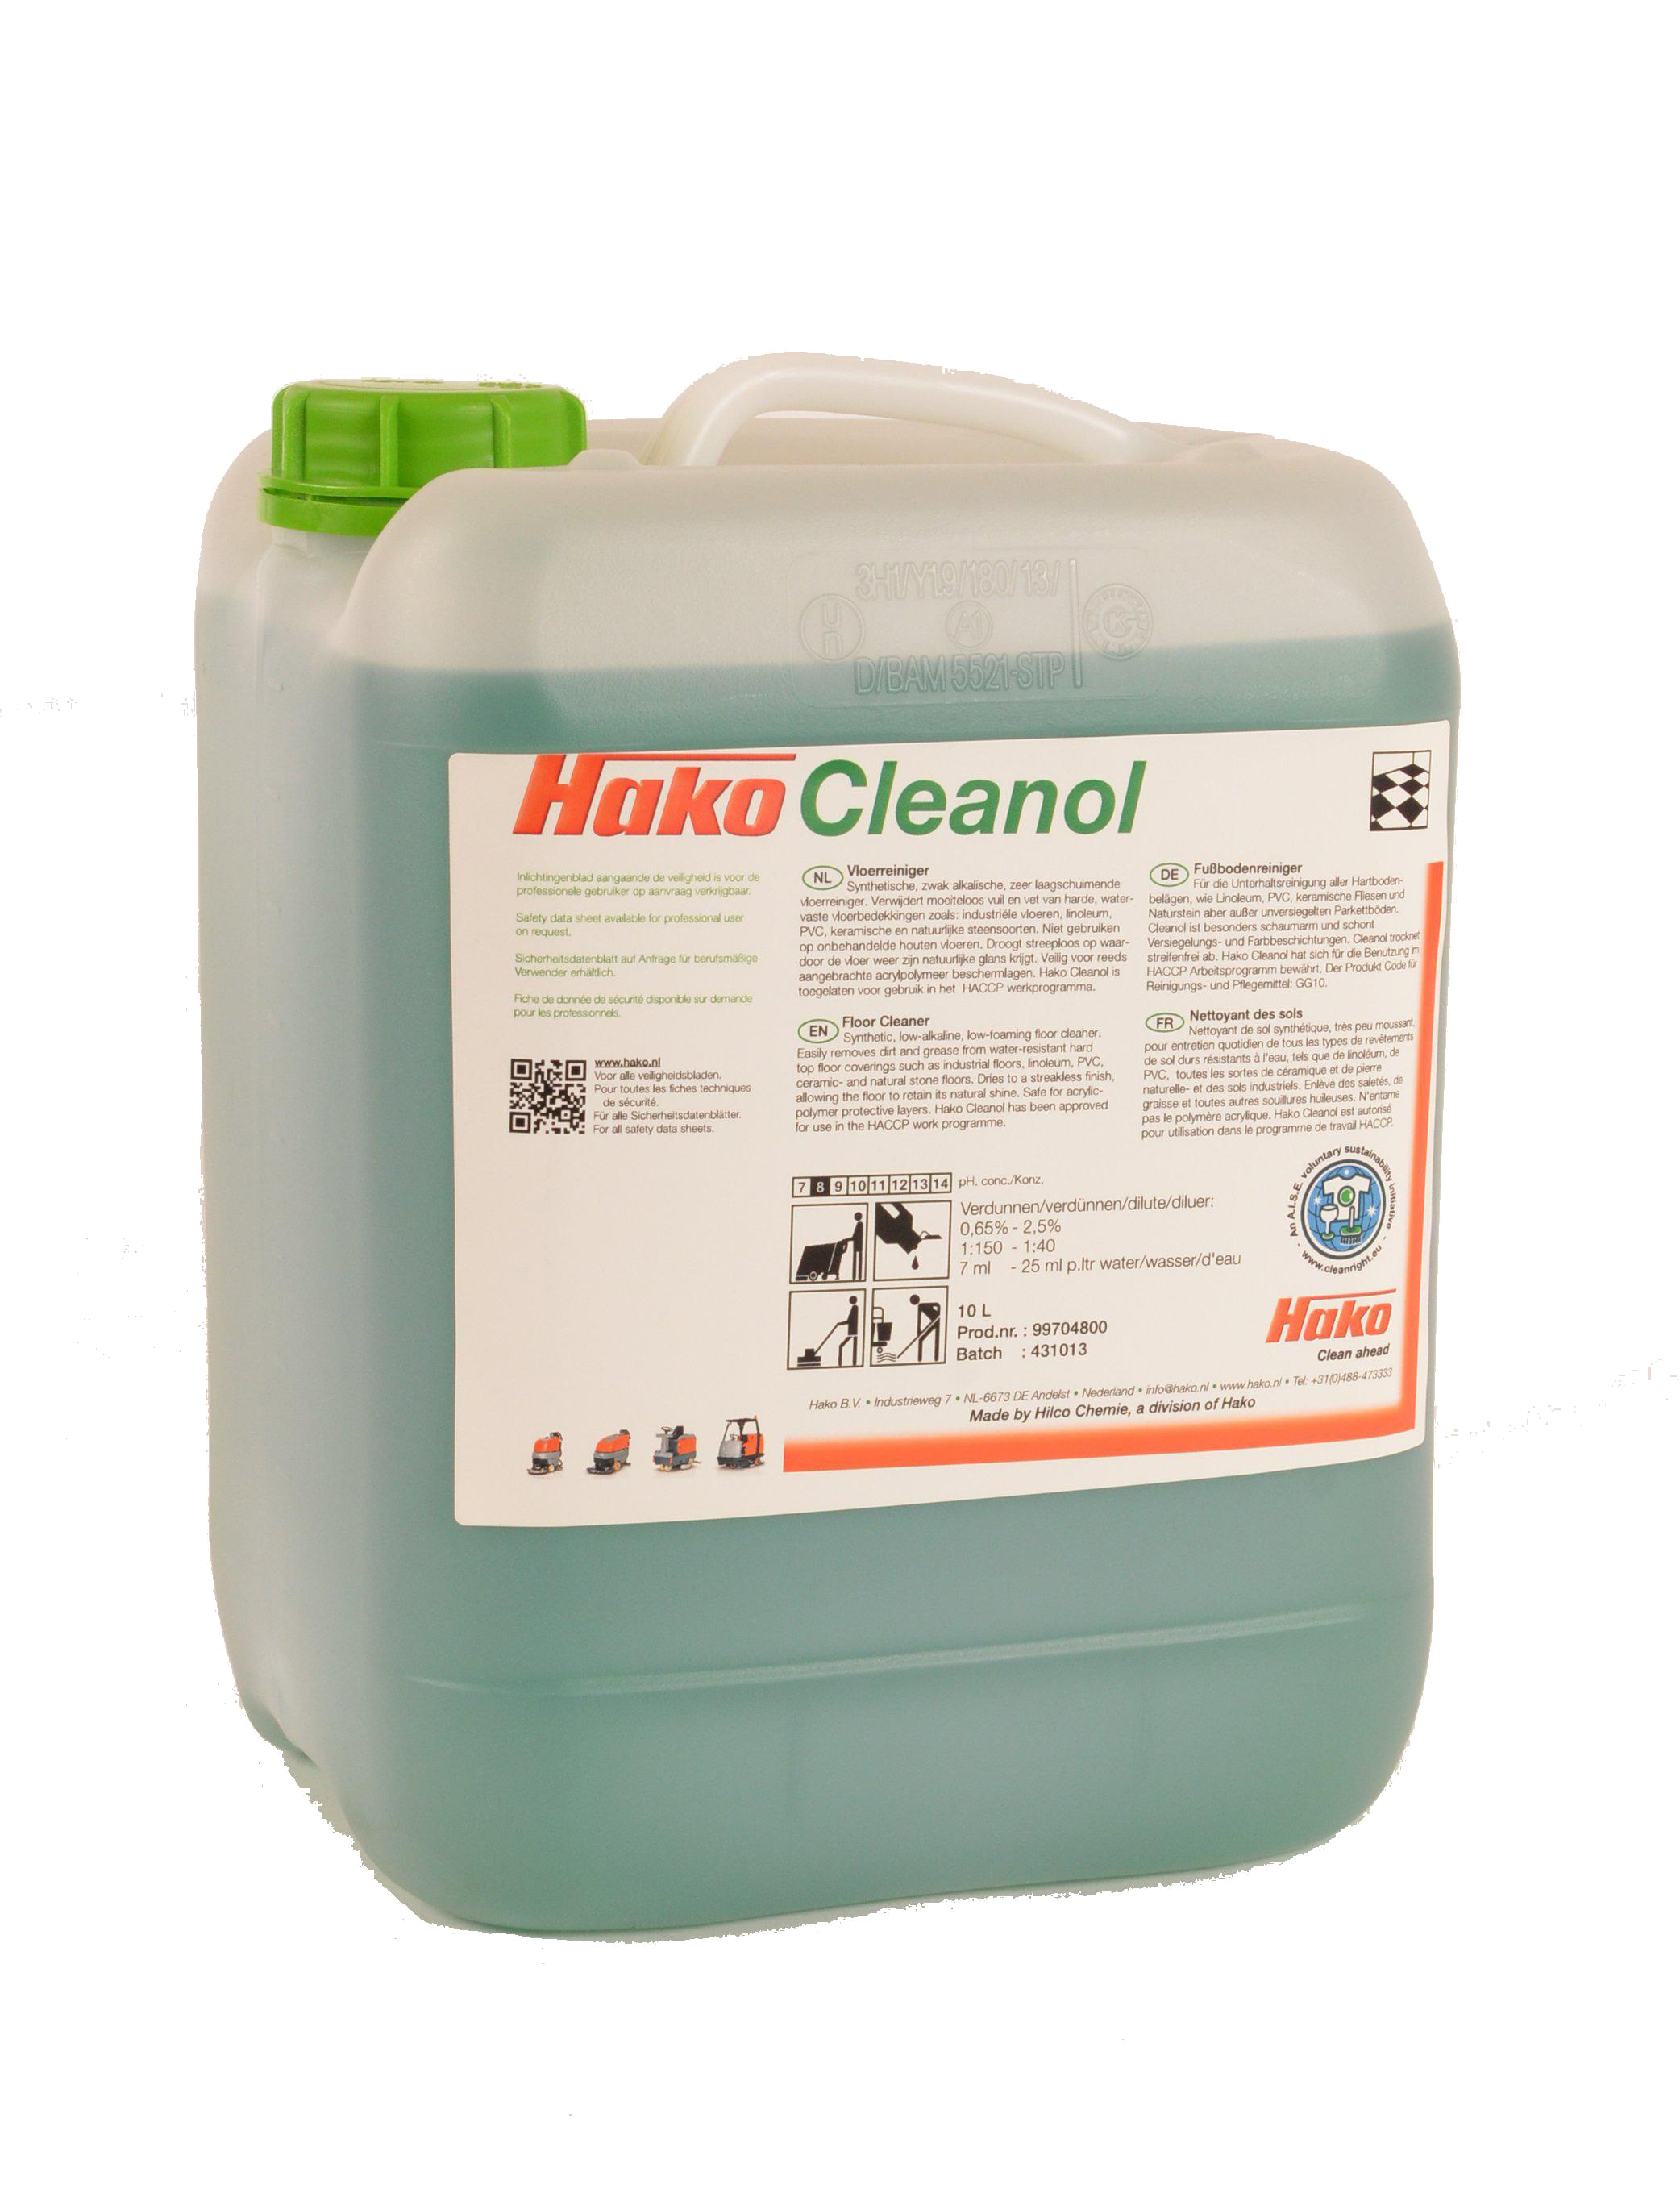 Hako Cleanol Hilco Chemie